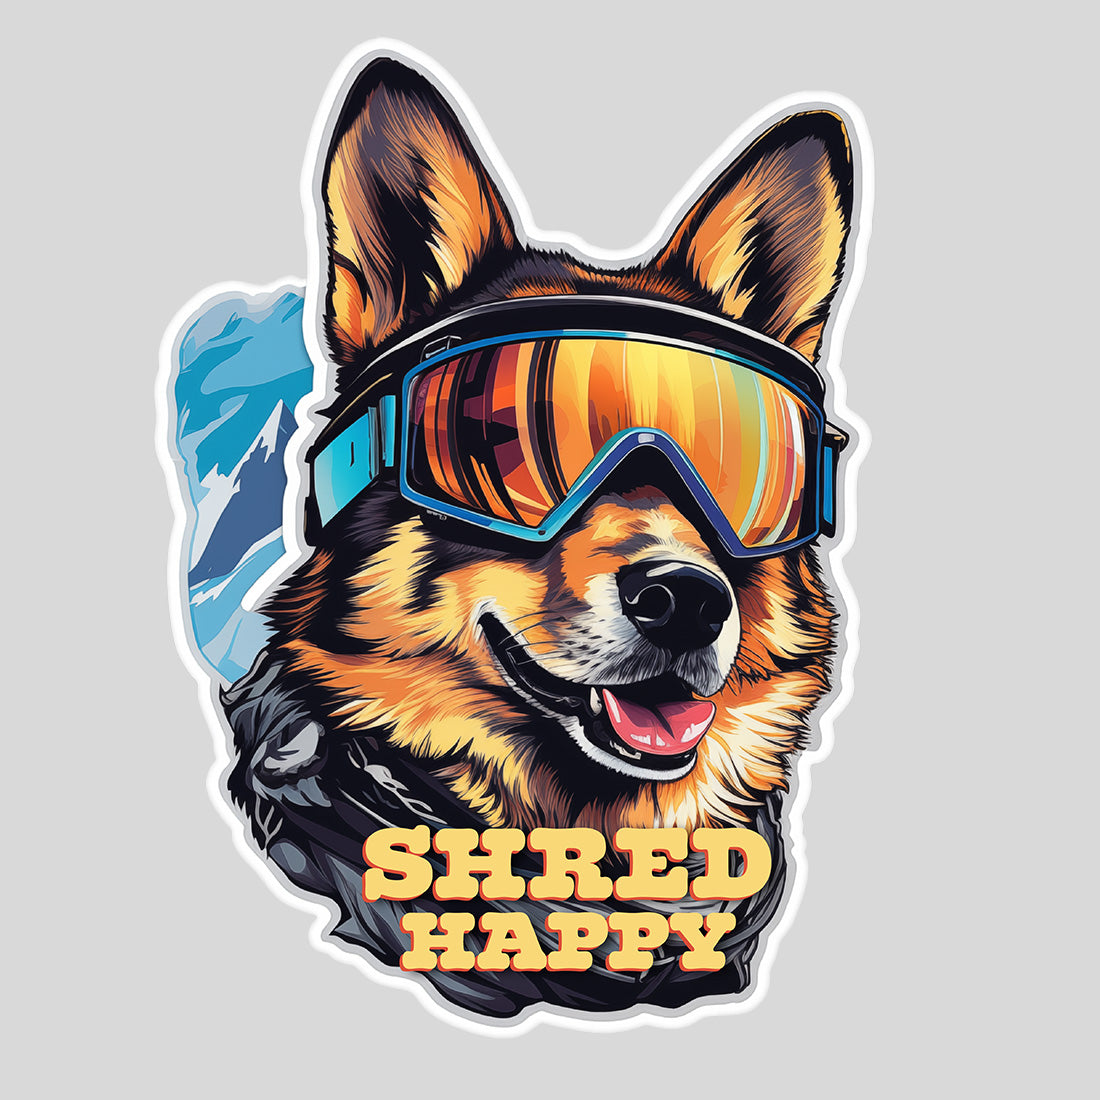 Shred Corgi Sticker